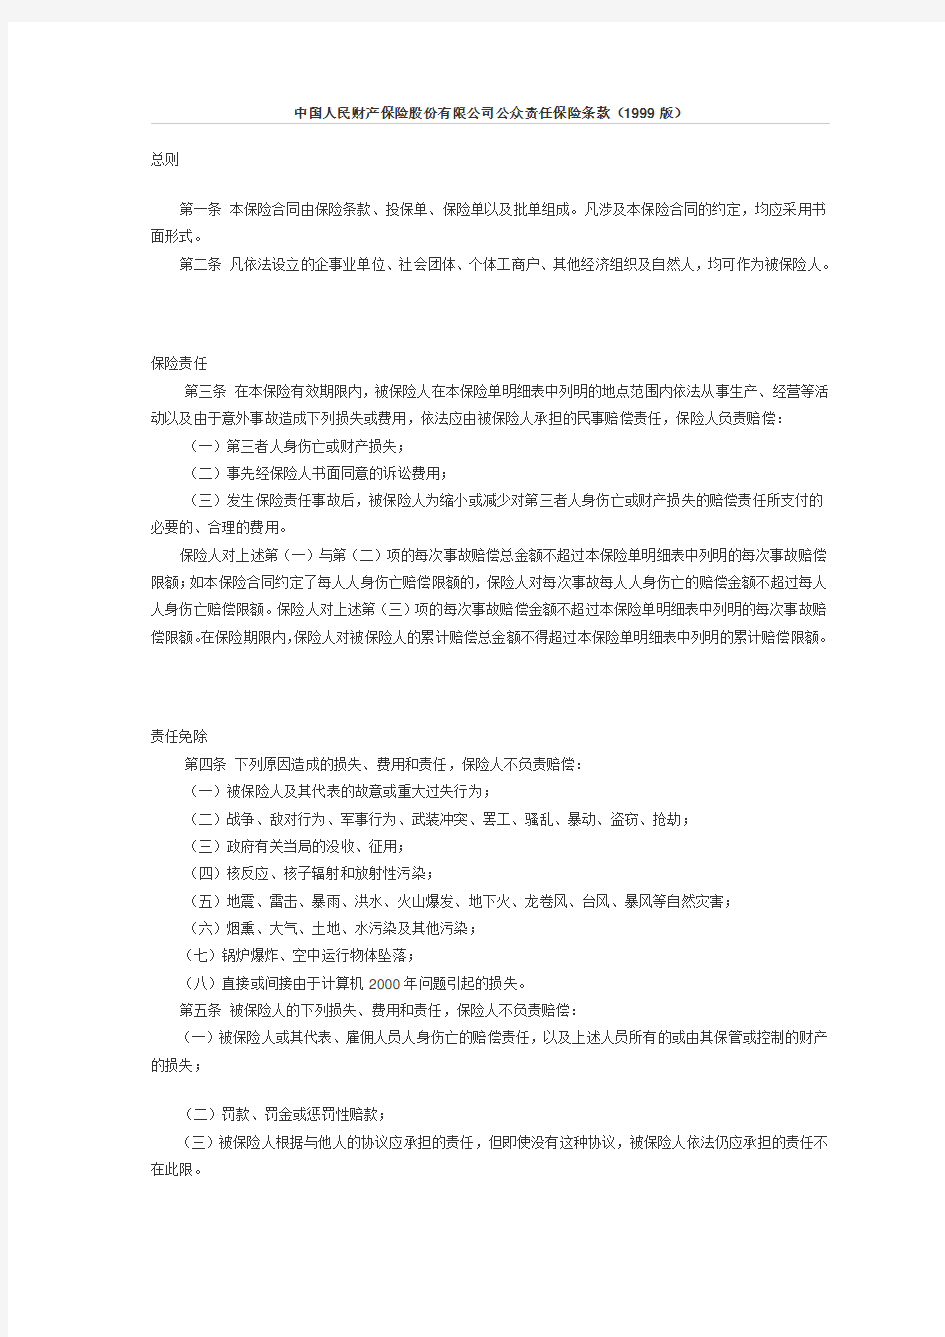 中国人民财产保险股份有限公司公众责任保险条款(1999版)